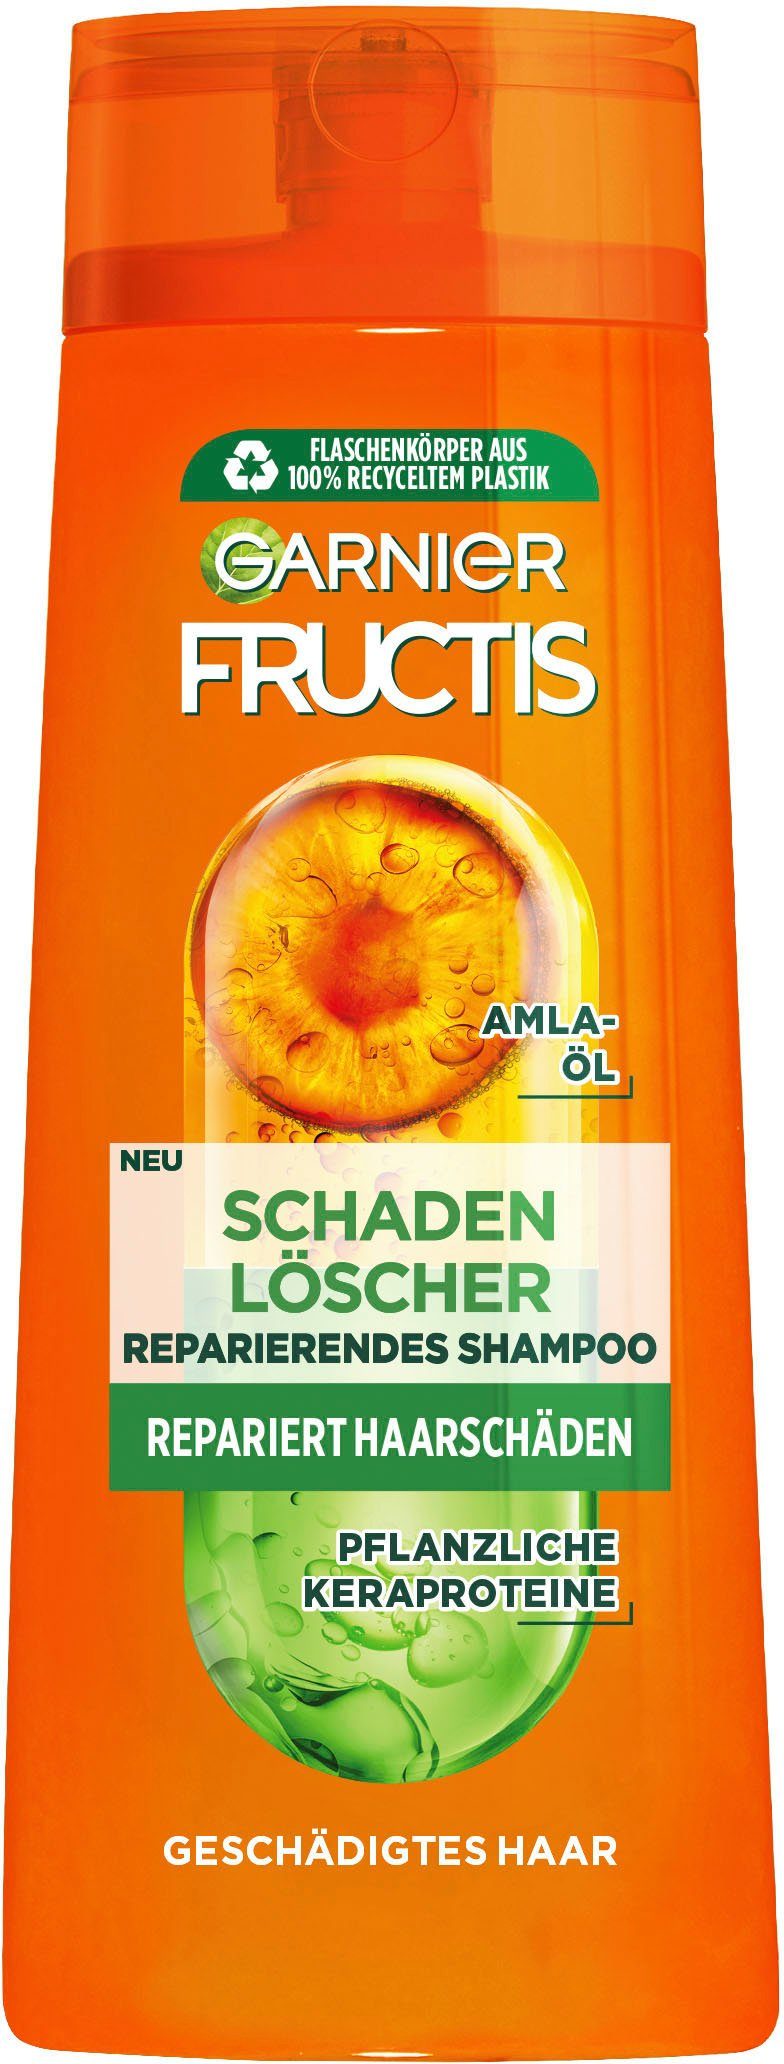 GARNIER Haarshampoo Garnier Fructis Schadenlöscher 6-tlg. Set, Shampoo